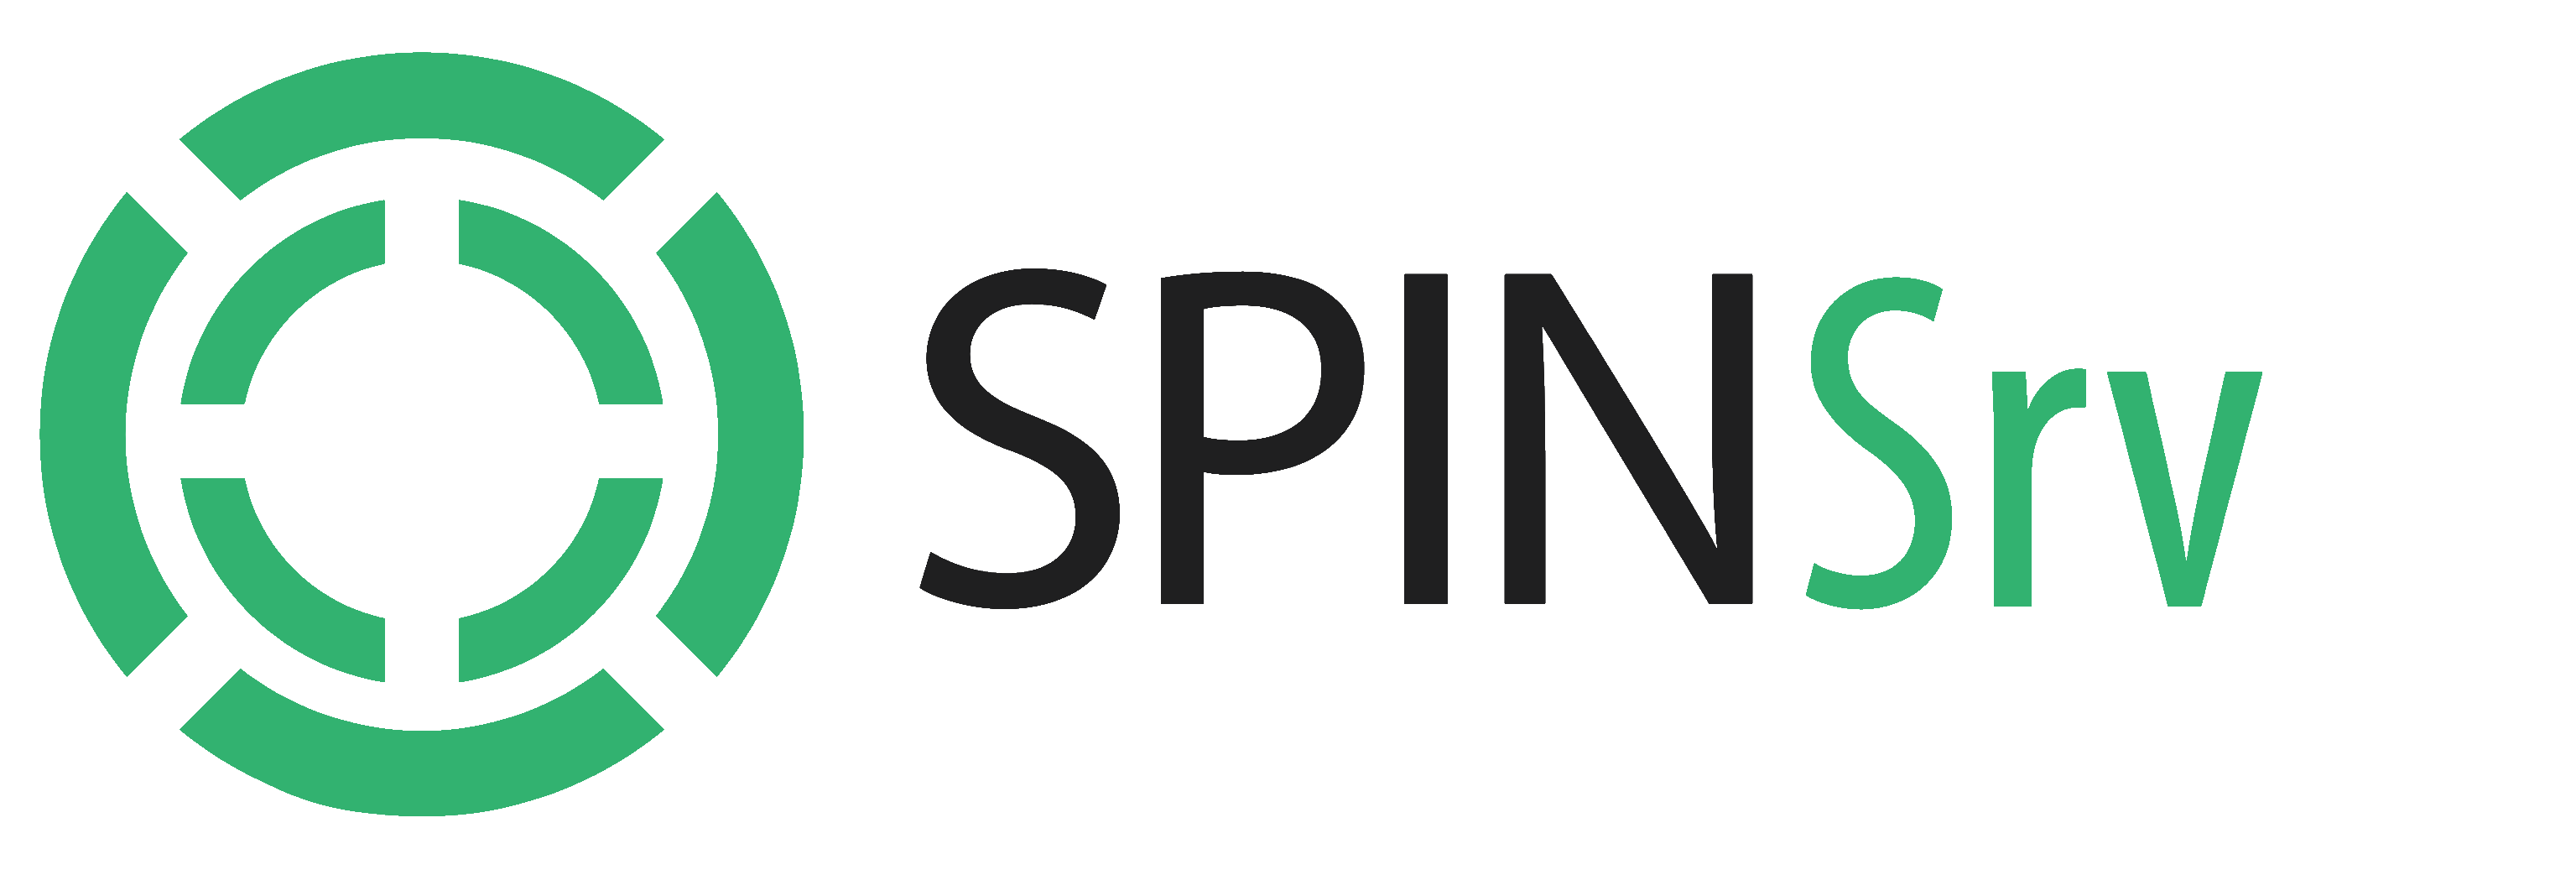 spinserver logo